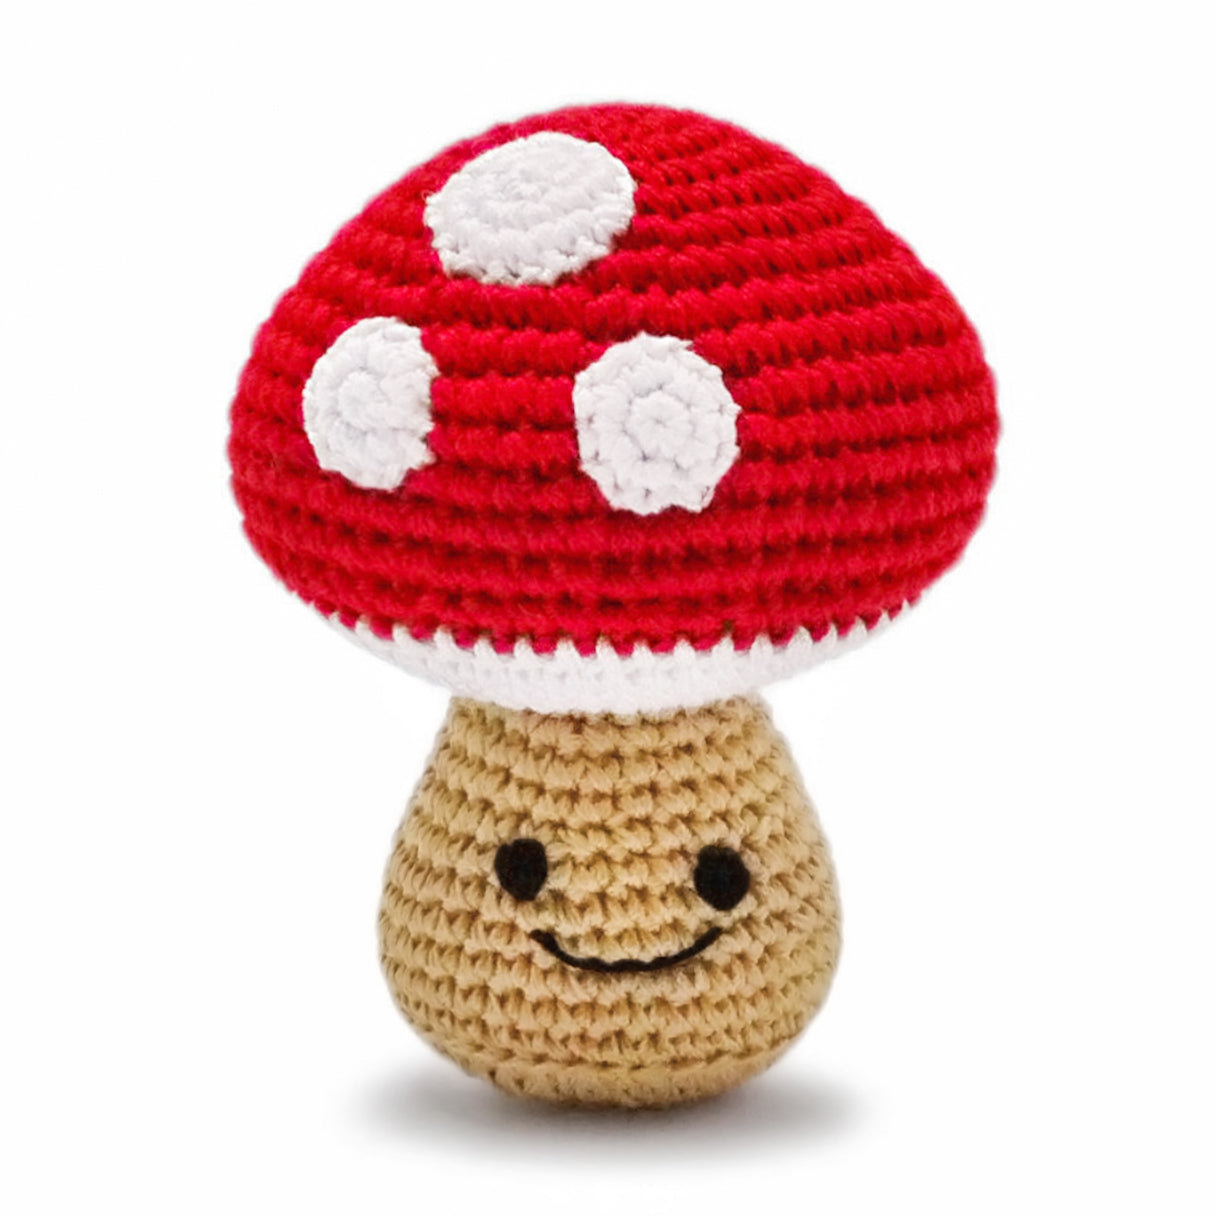 crochet toadstool mushroom tiny dog toy